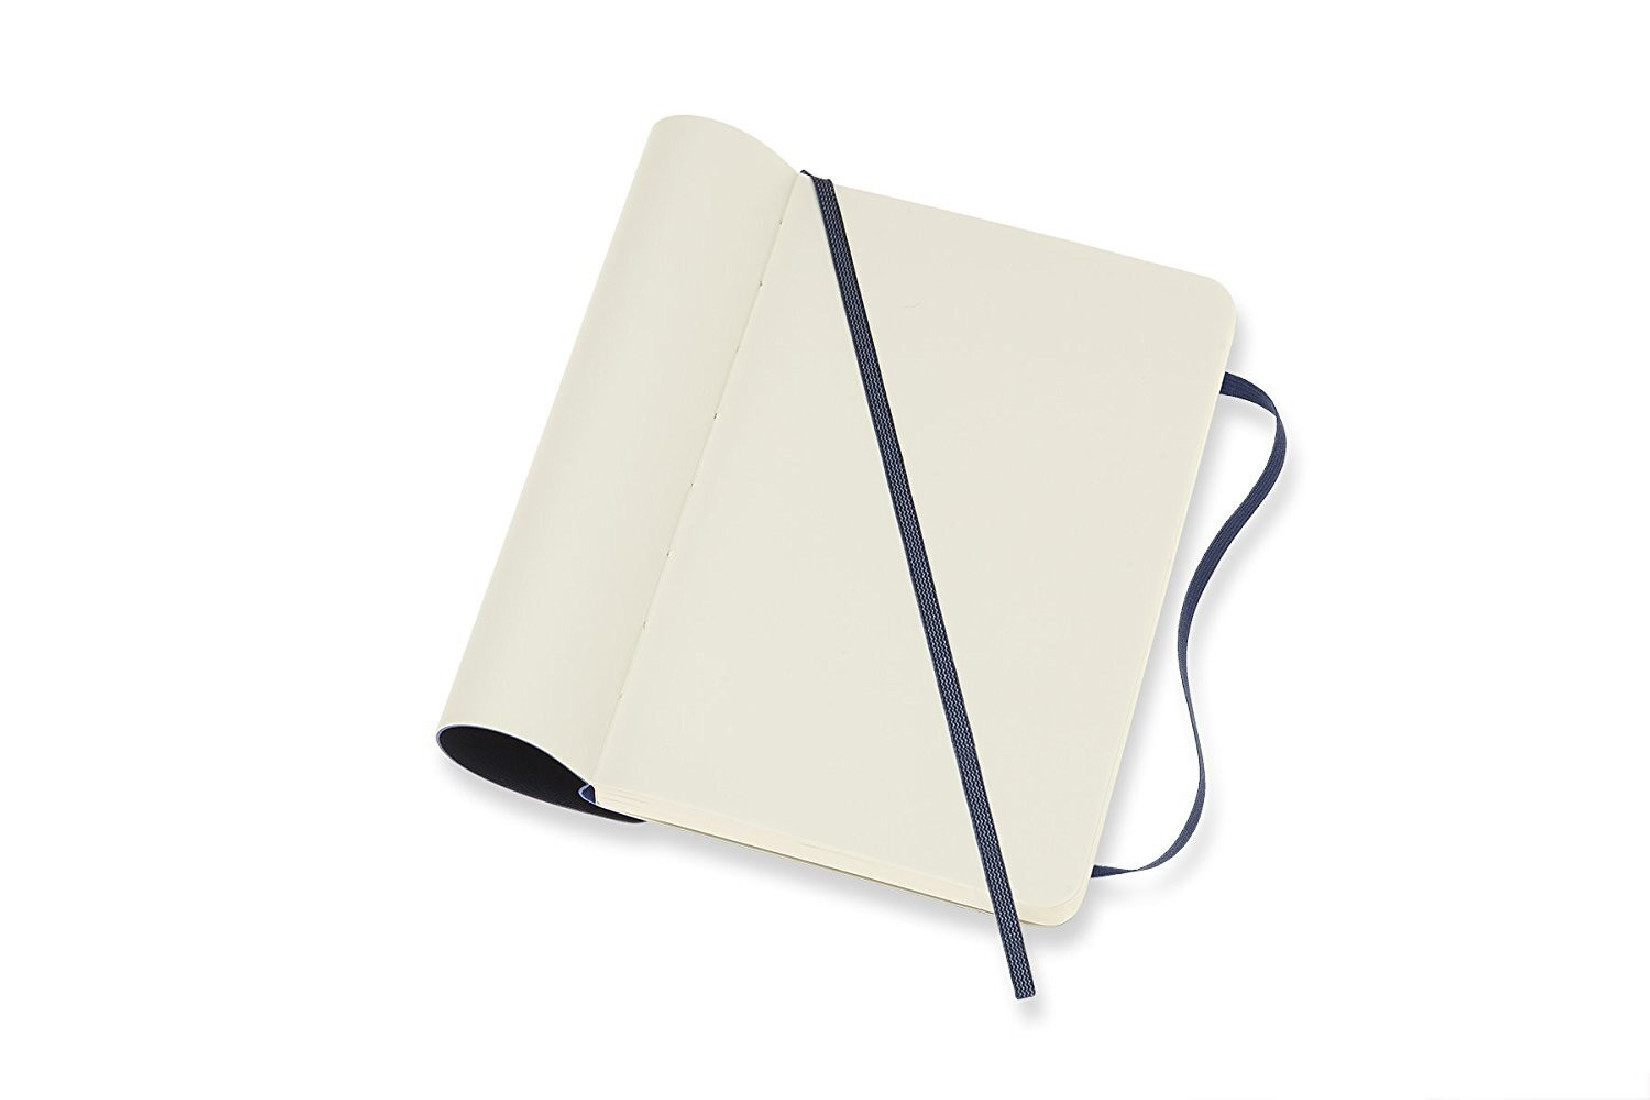 Notebook Pocket 9x14 Plain Myrtle Green Soft Cover Moleskine